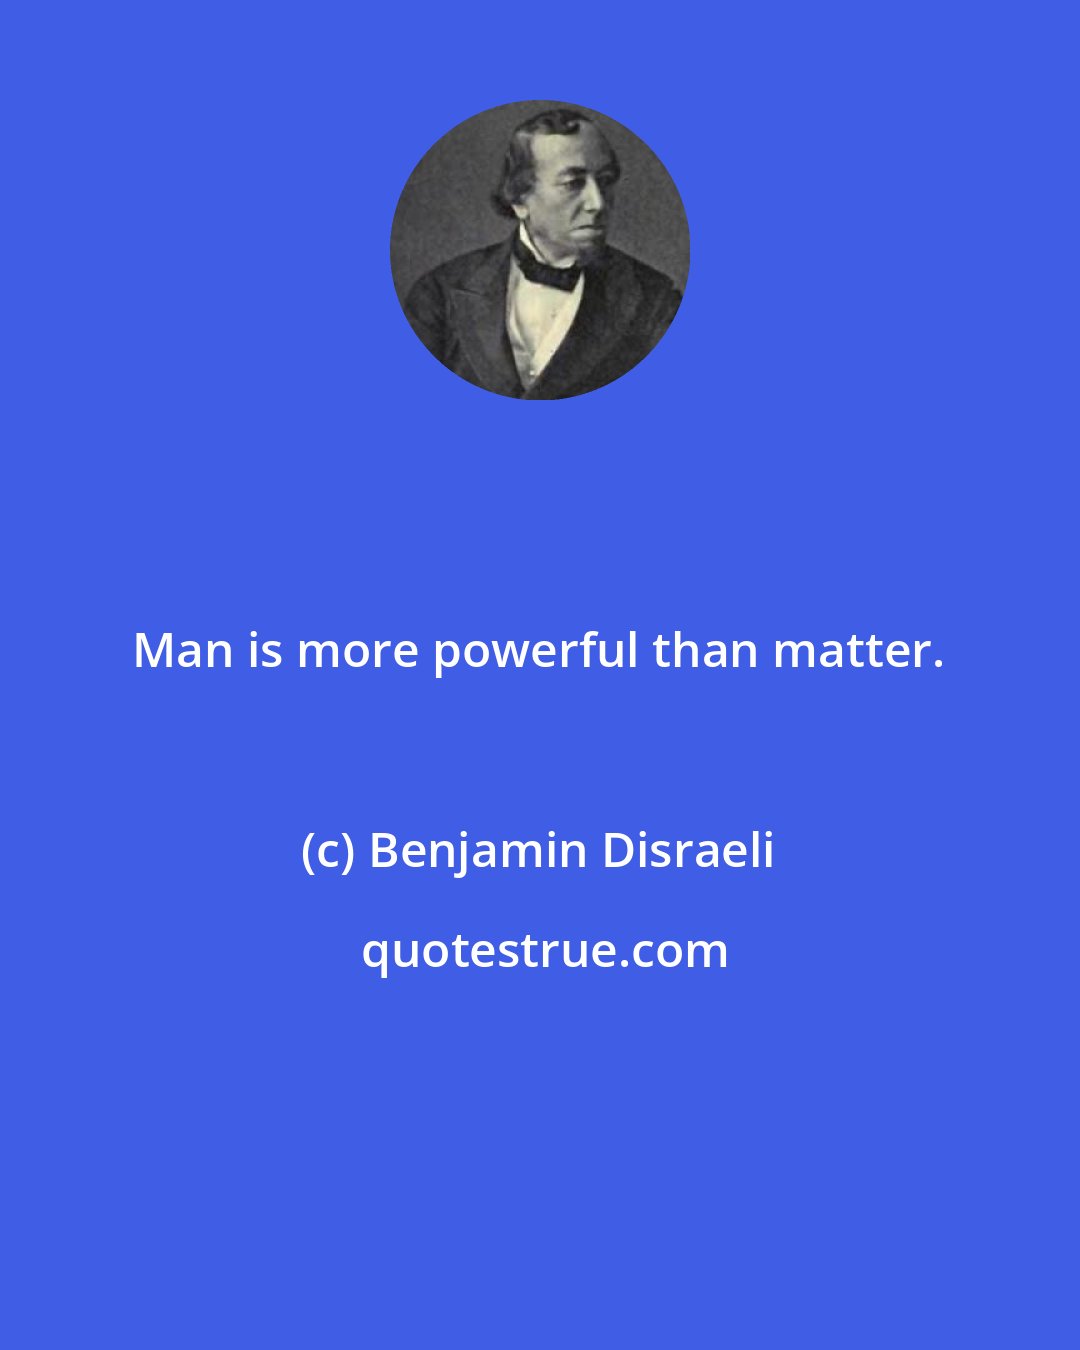 Benjamin Disraeli: Man is more powerful than matter.